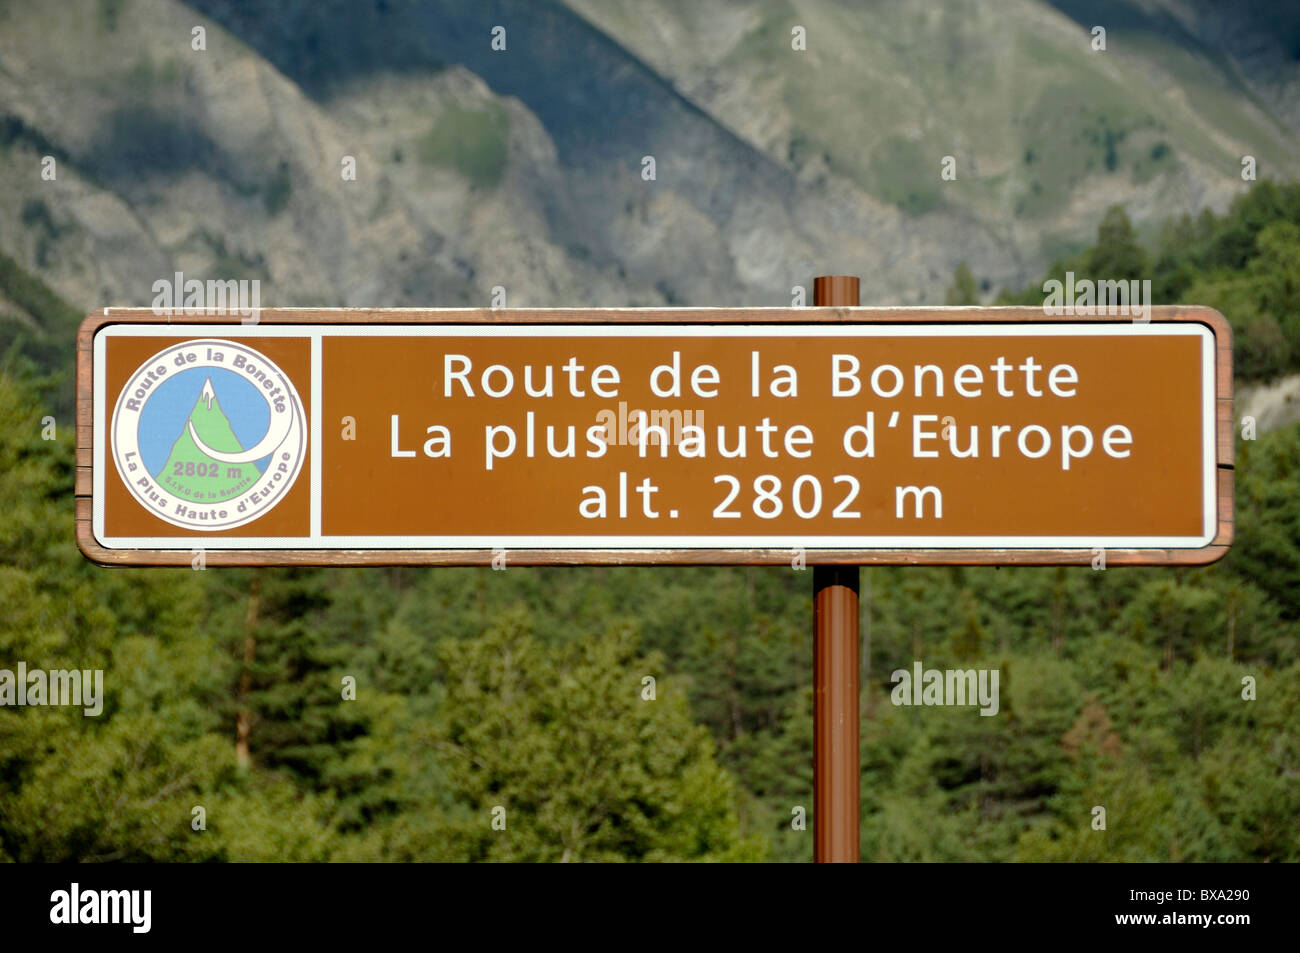 Panneau routier, Route de la Bonette, plus haute route d'Europe, le Parc National du Mercantour dans les Alpes du Sud, France Banque D'Images